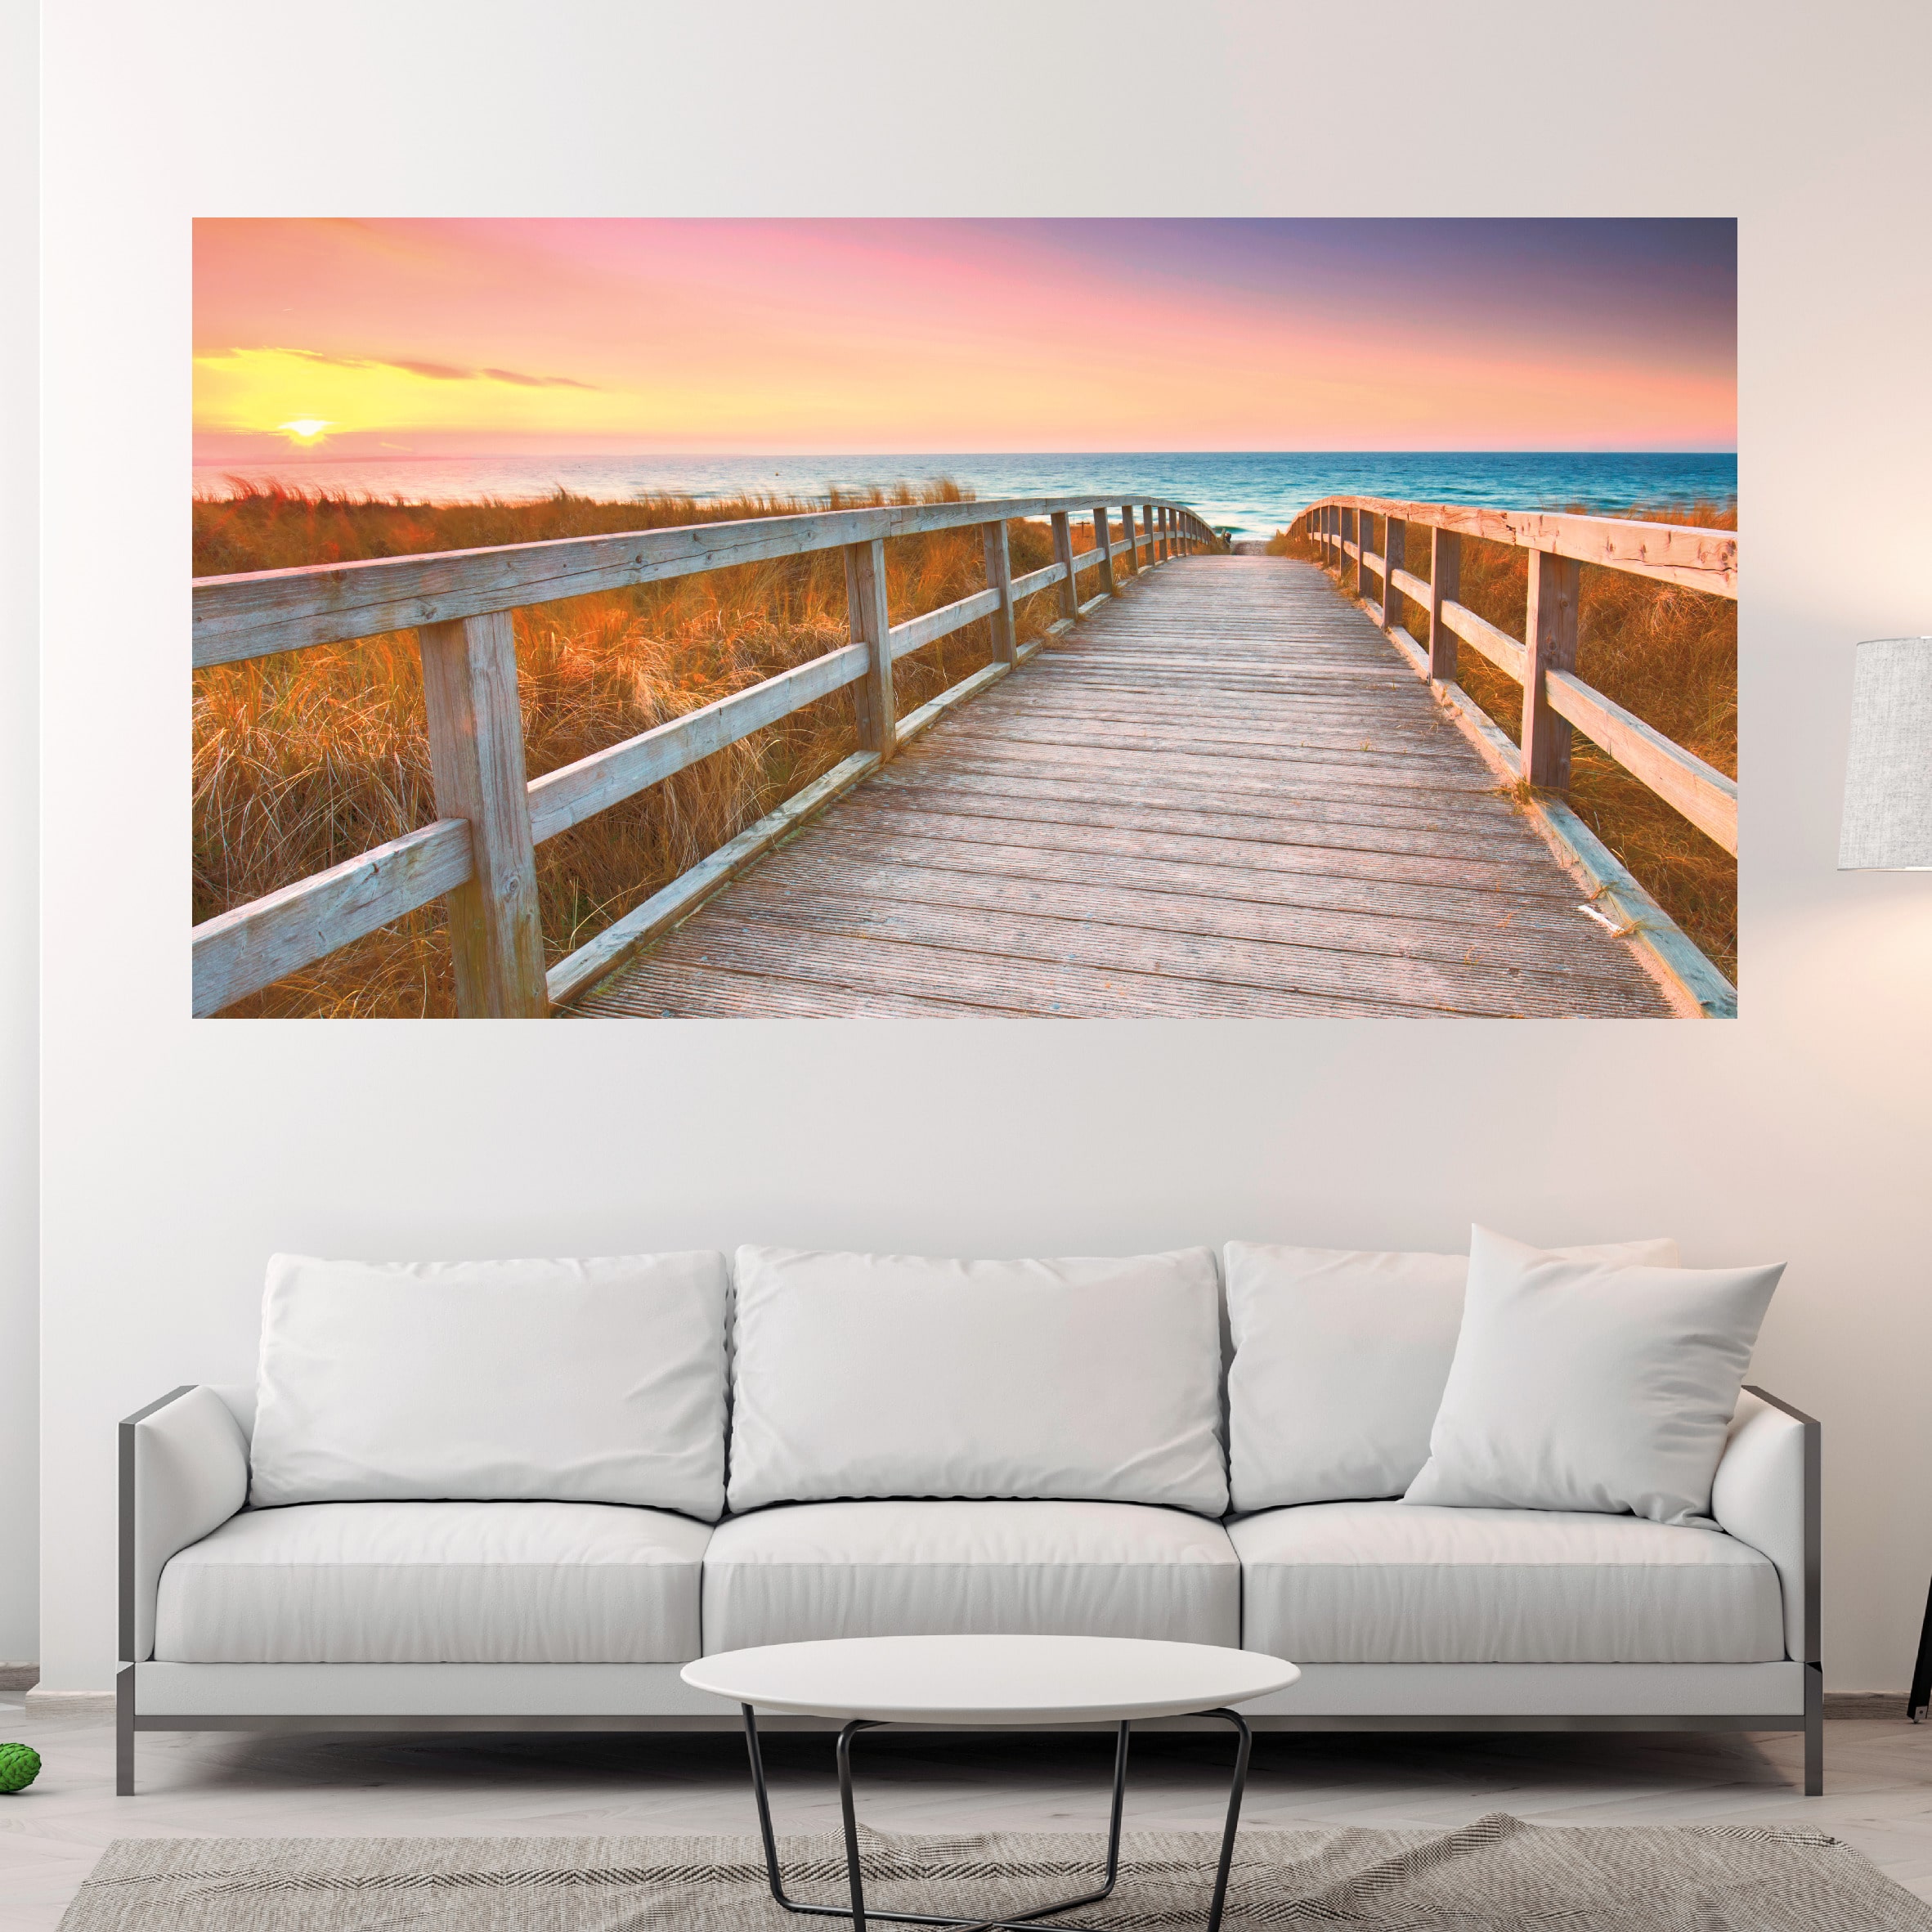 Verwaand Oven Suri Canvas schilderij strand water zonsondergang - Kei-Gaaf